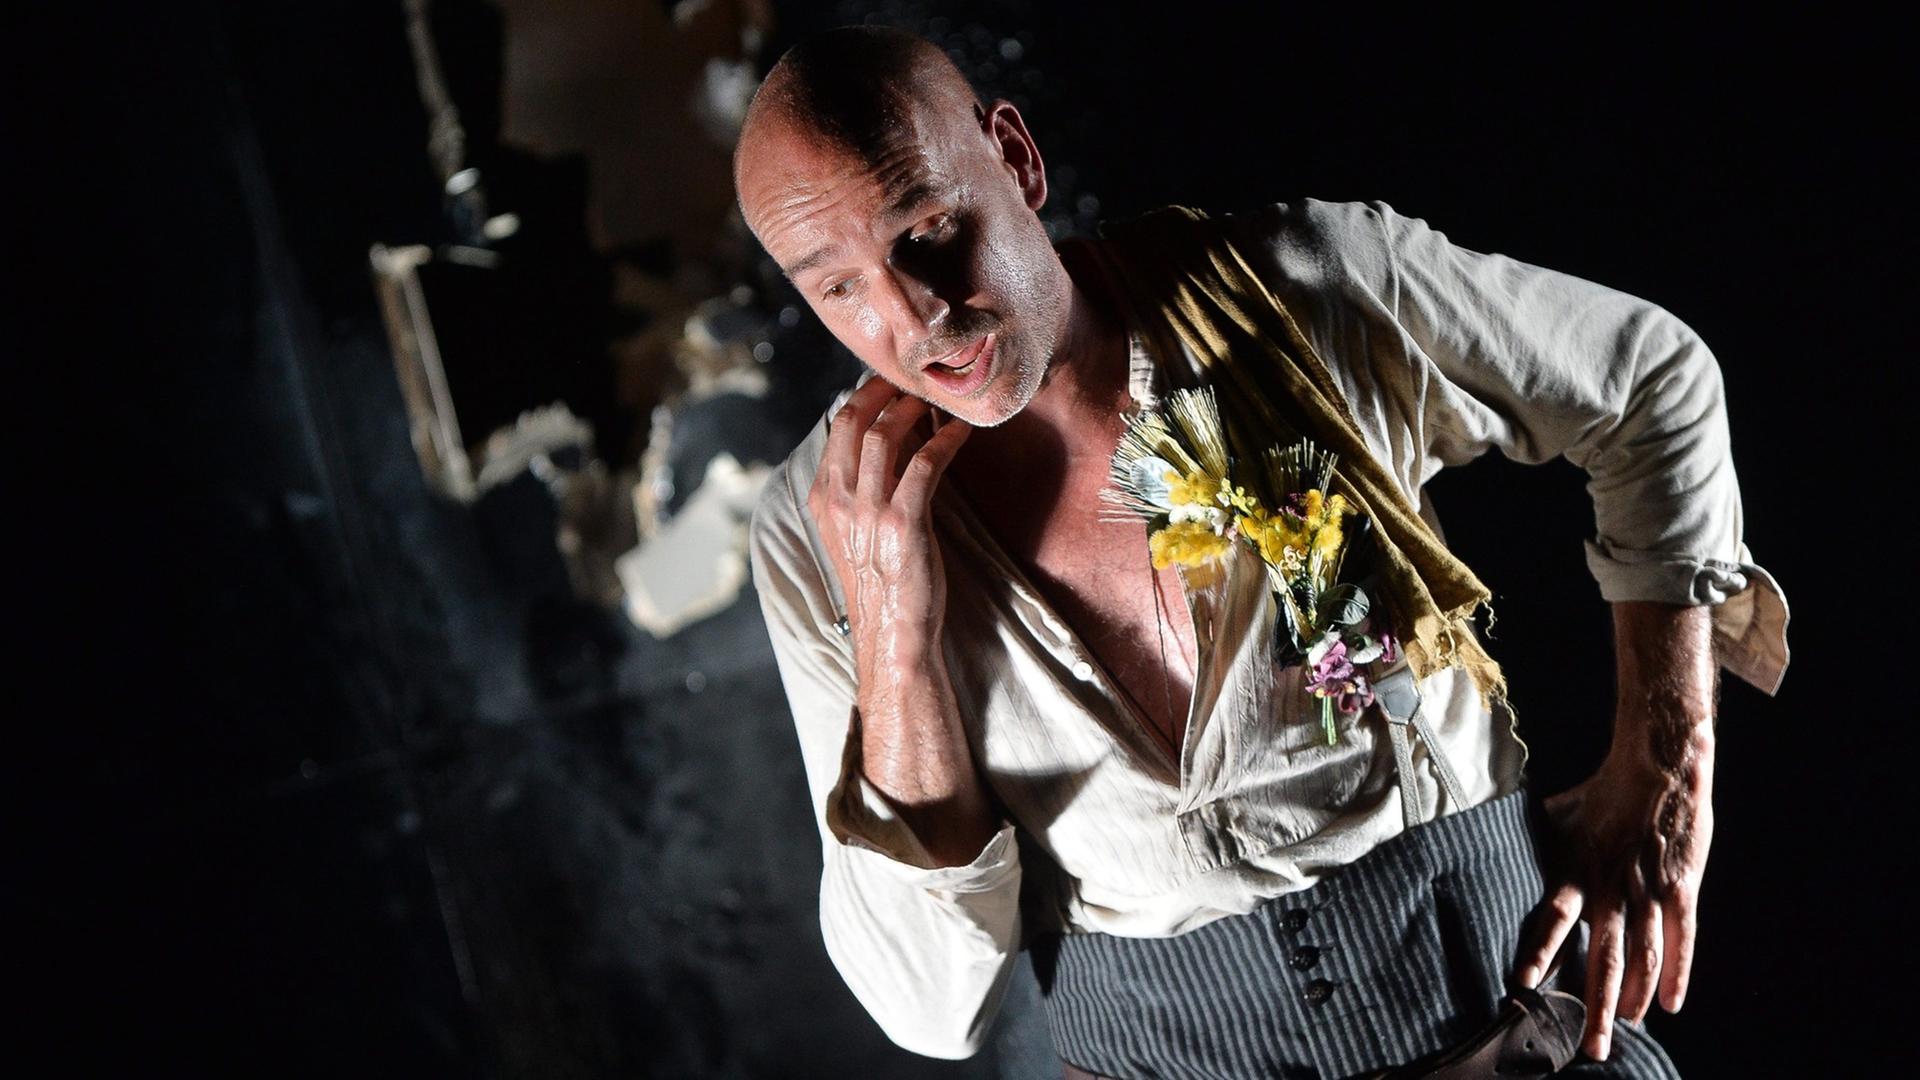 Paul Herwig als Georg Trakl in "Der Abschied", Schauspieler mit Glatze, hellem aufgerissenen Hemd und grauer Hose auf einer dunklen Bühne